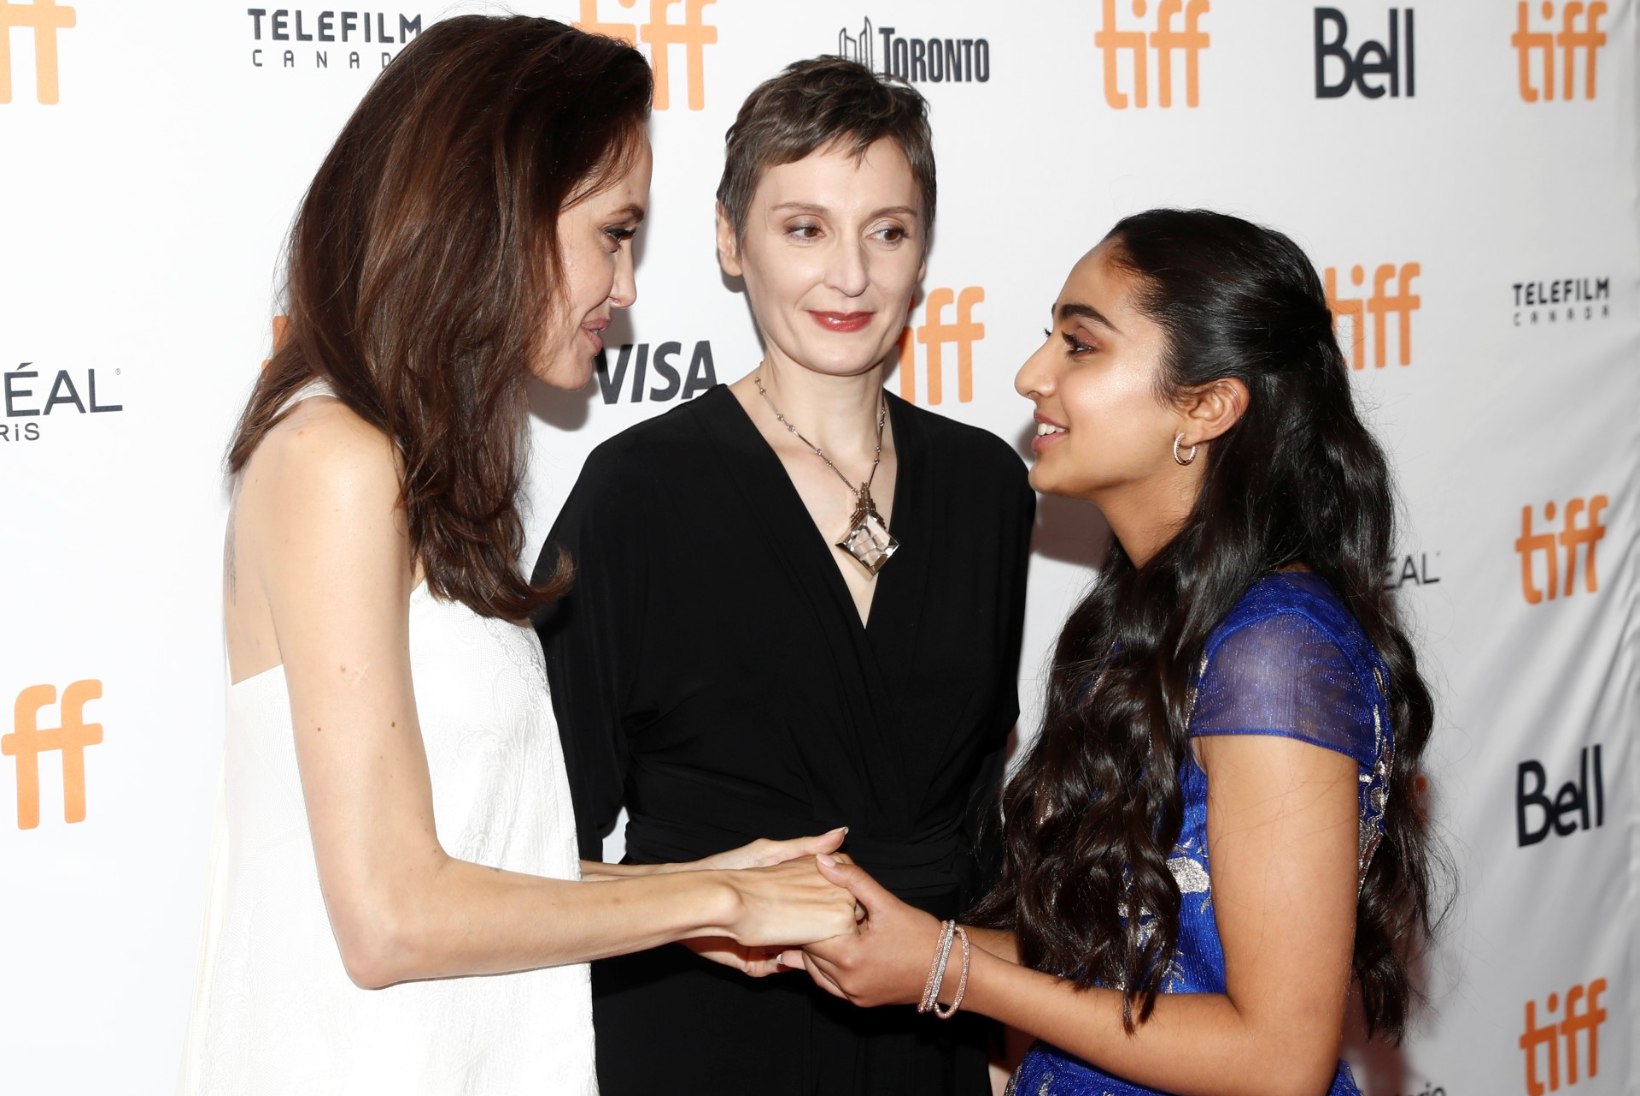 FOTOD | Angelina Jolie viis oma lapsed Toronto filmifestivalile